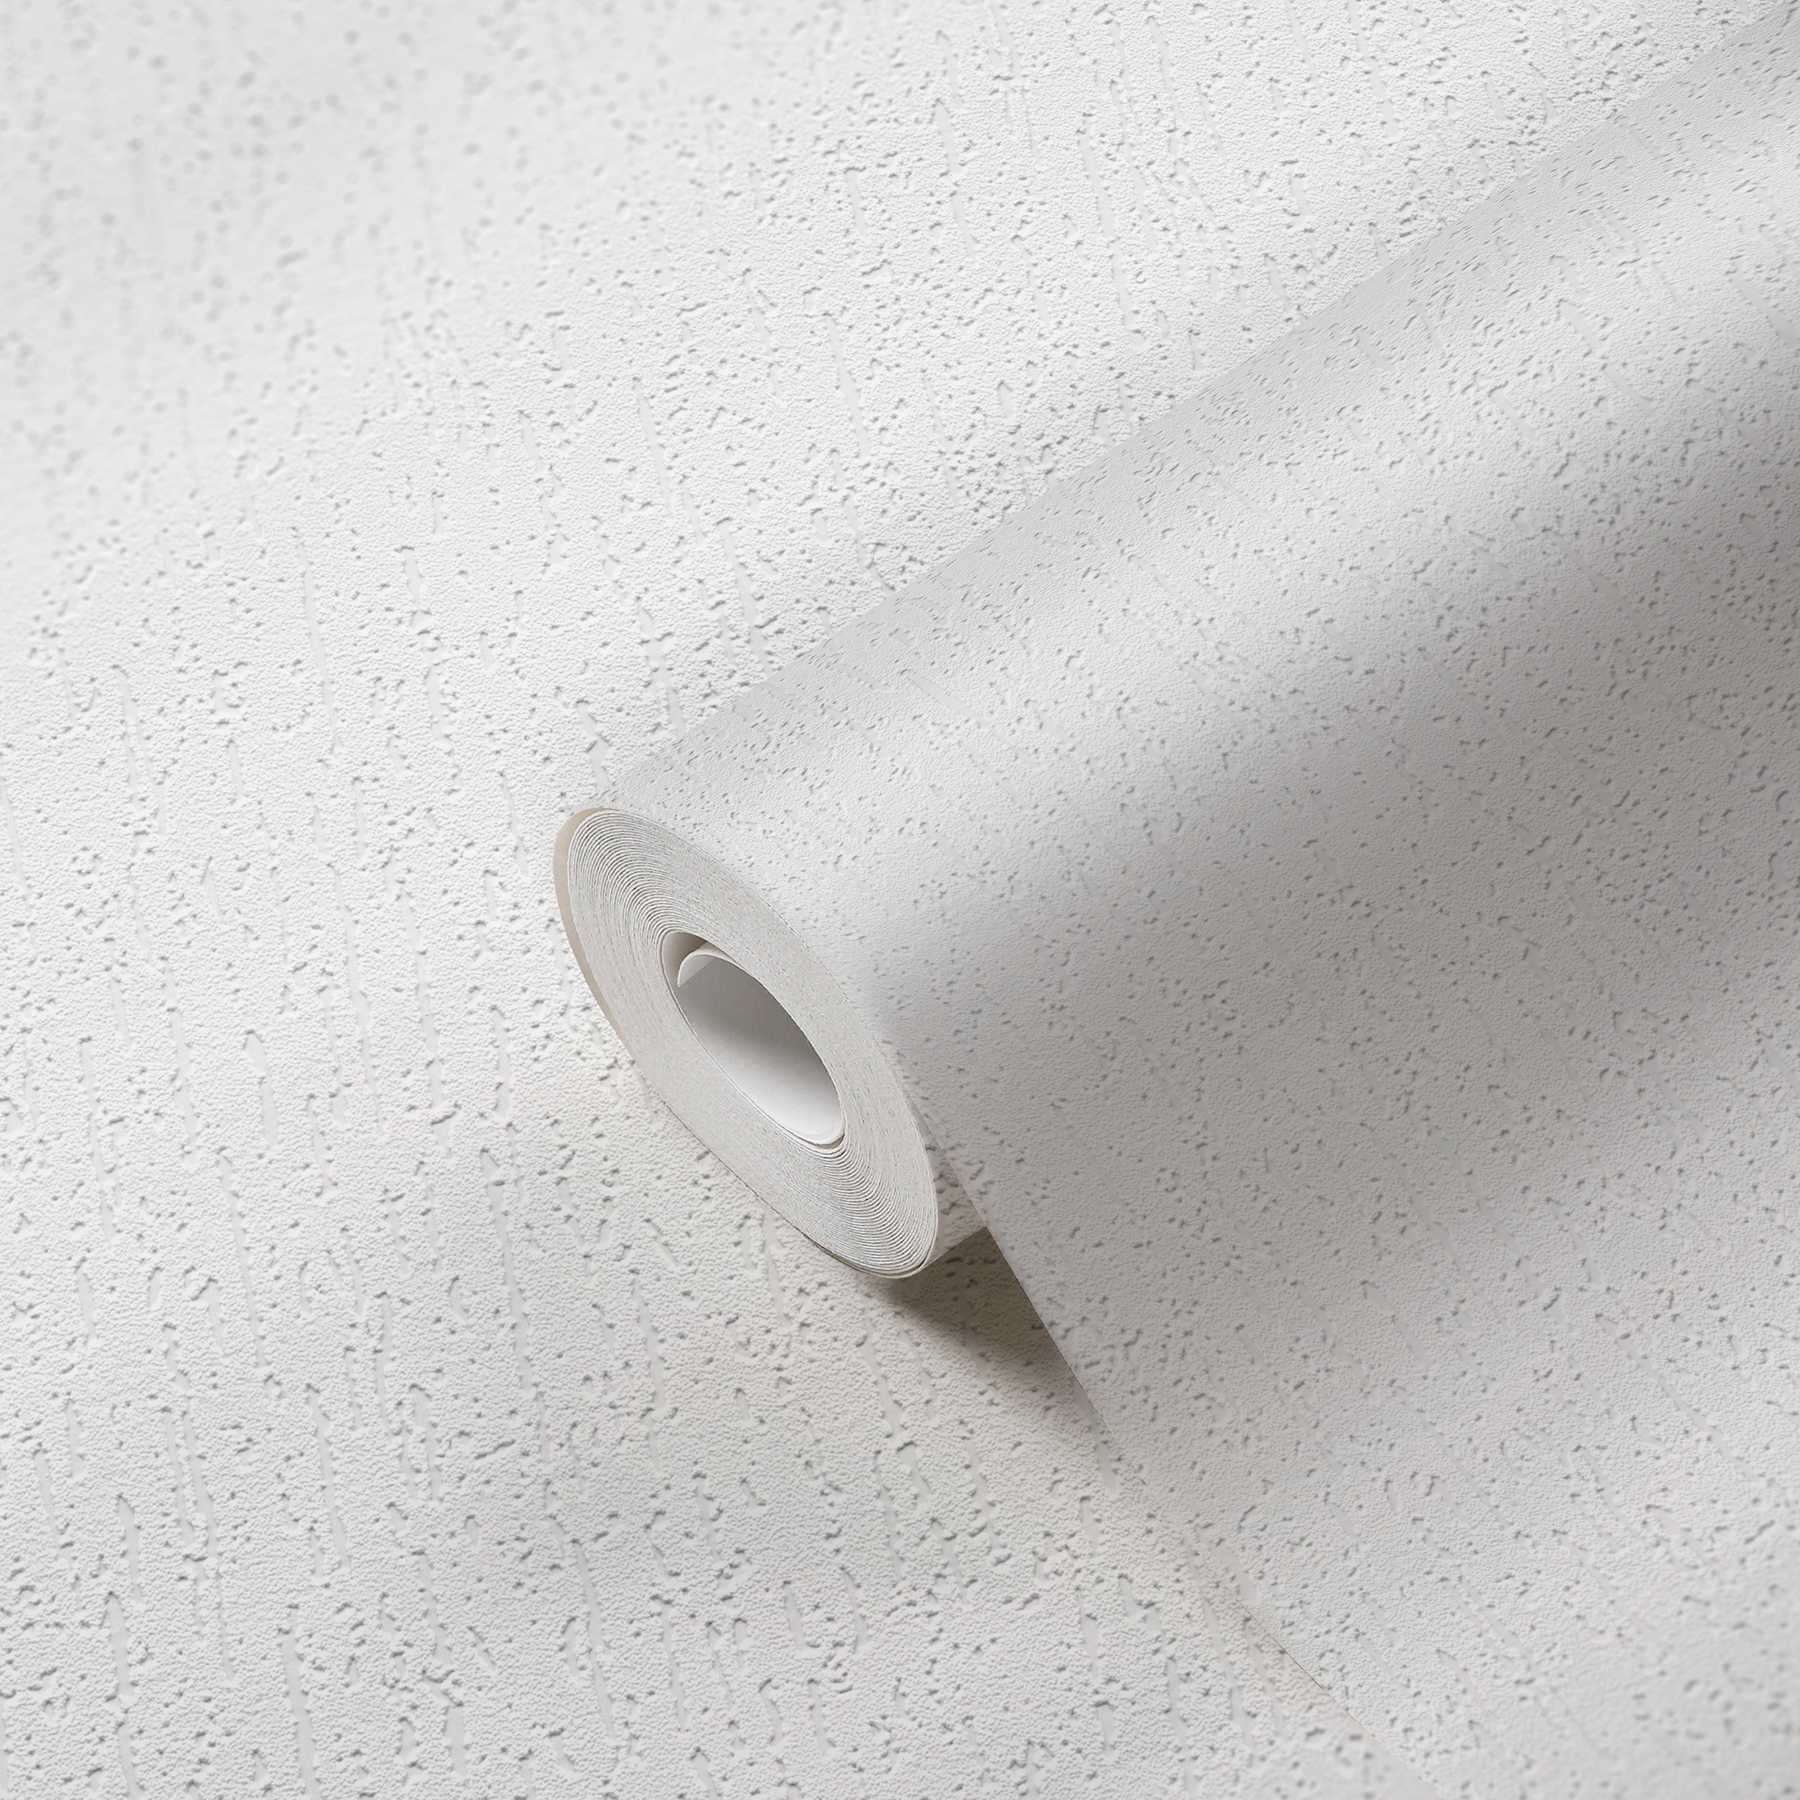             Weiße Papiertapete Putzoptik mit Struktureffekt
        